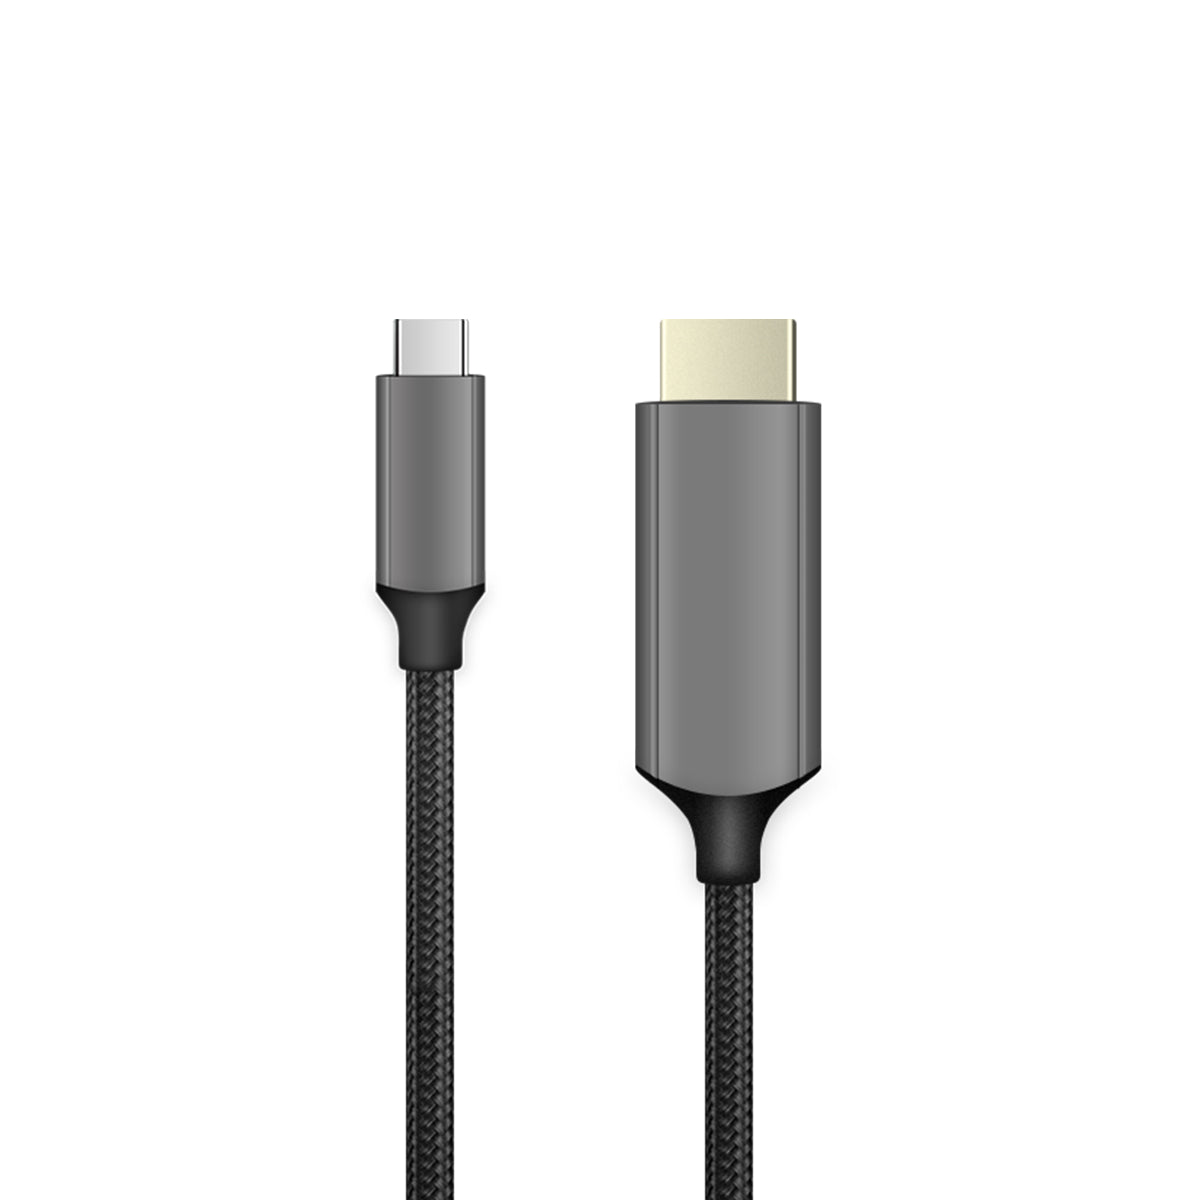 XREAL Beam \u0026 USB-C cable使用には全く問題ありません